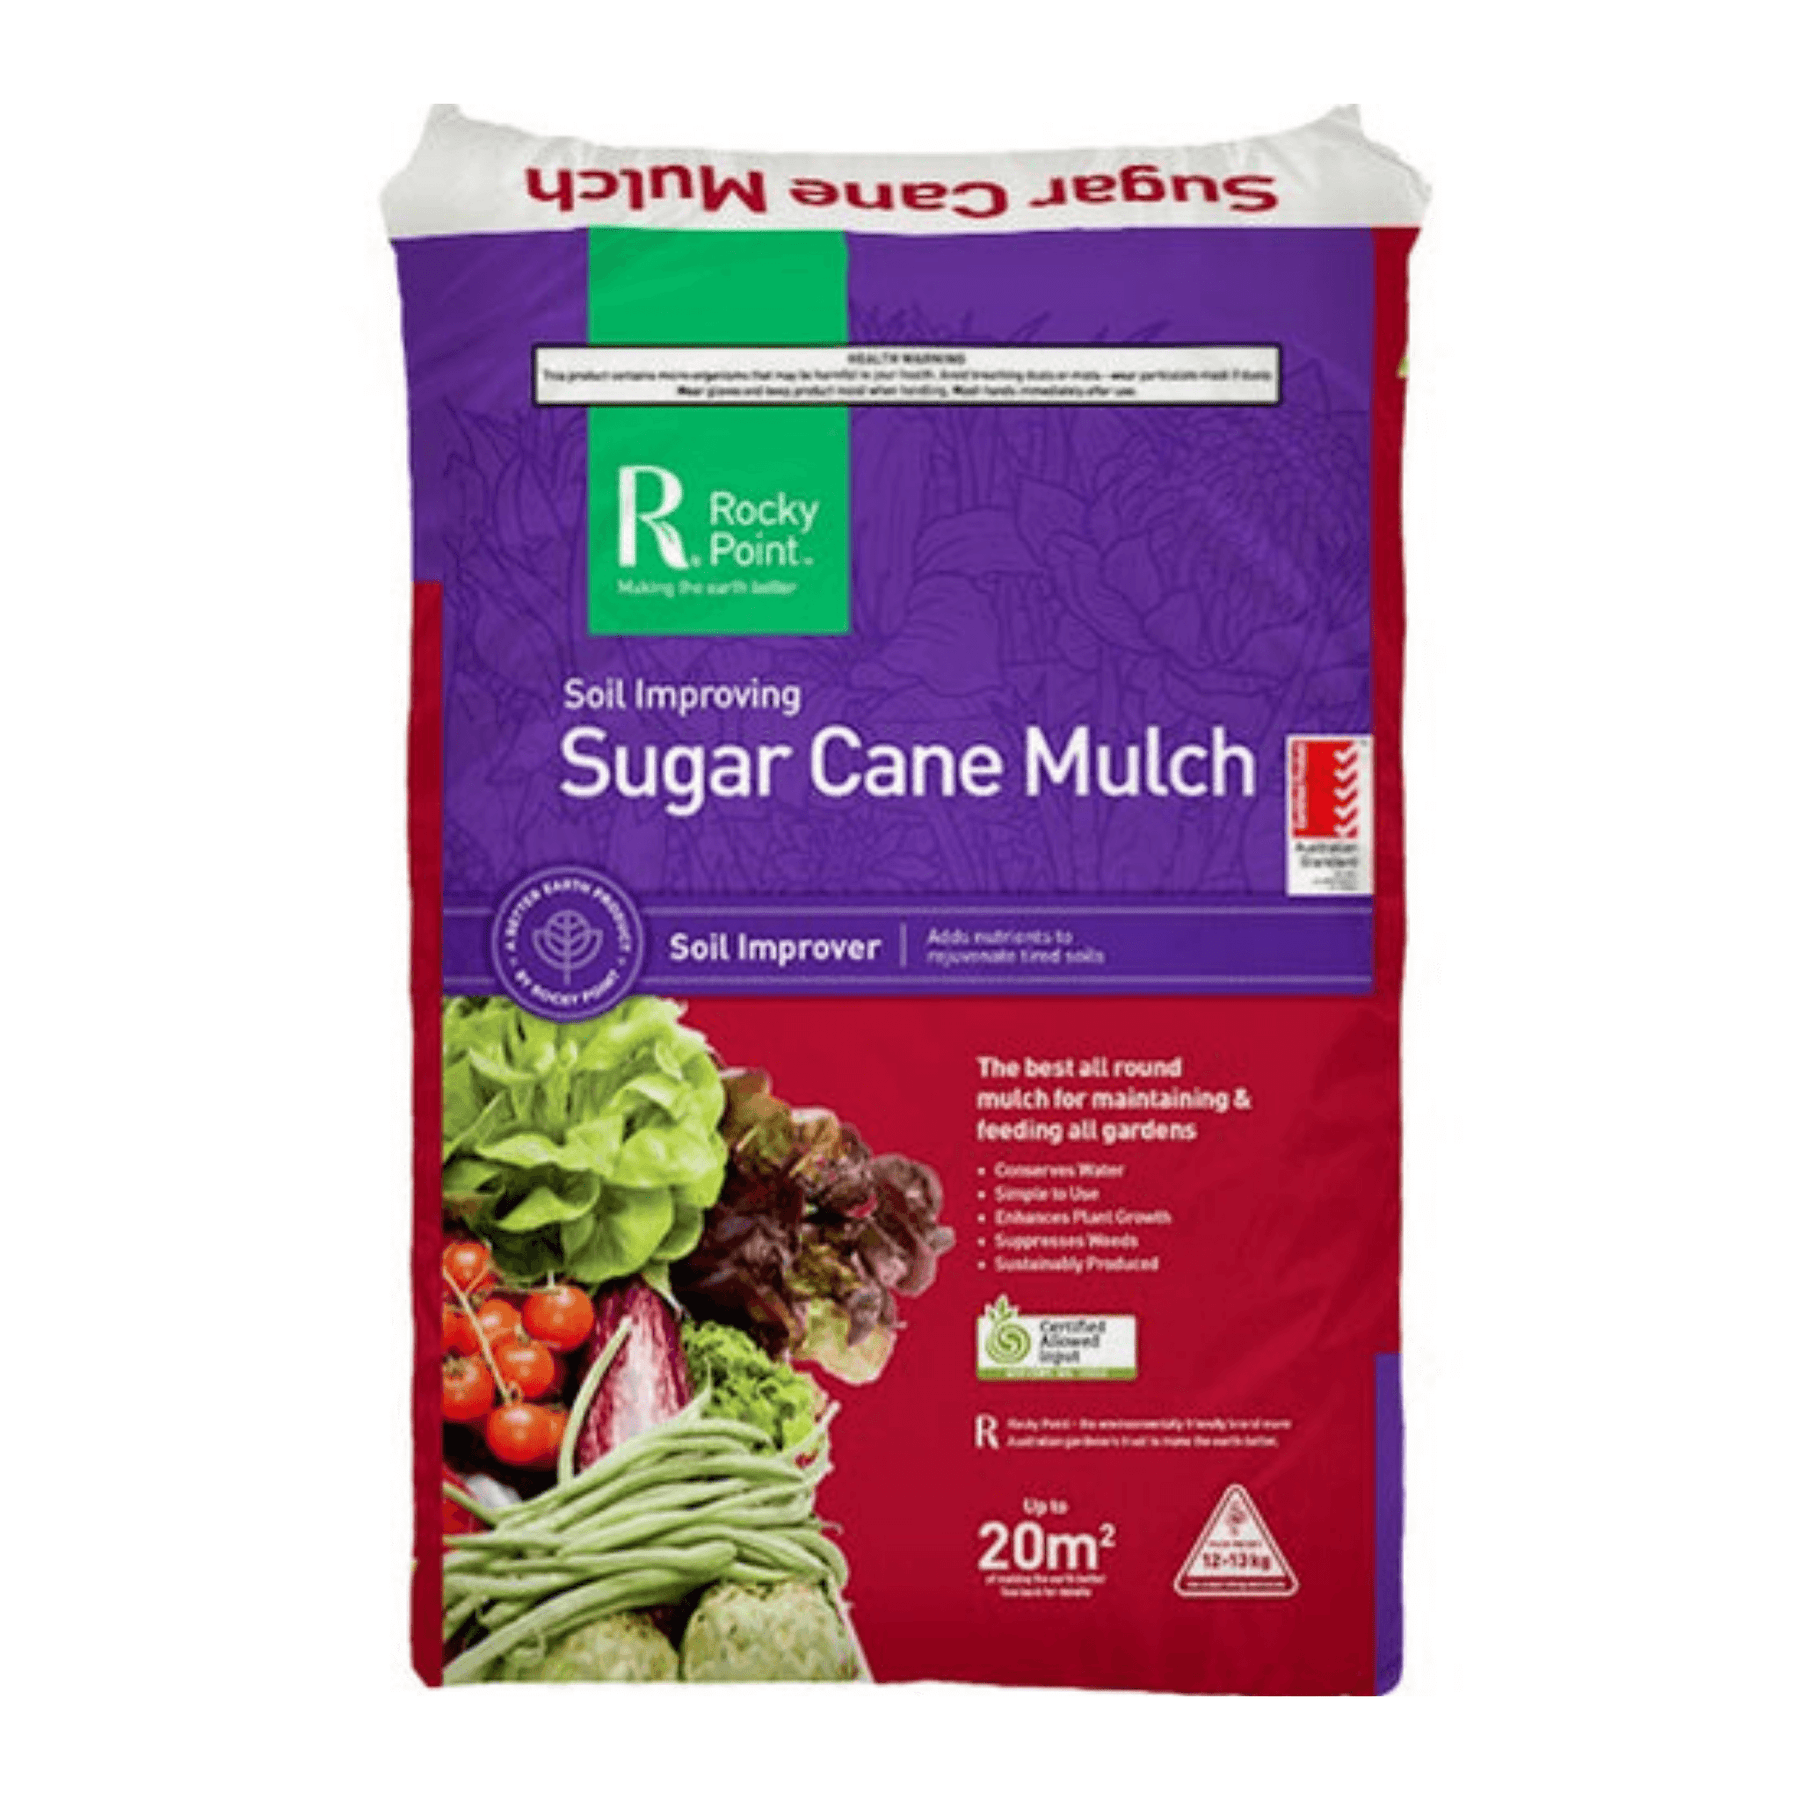 Rp Sugar Cane Mulch Organic 20m2 The